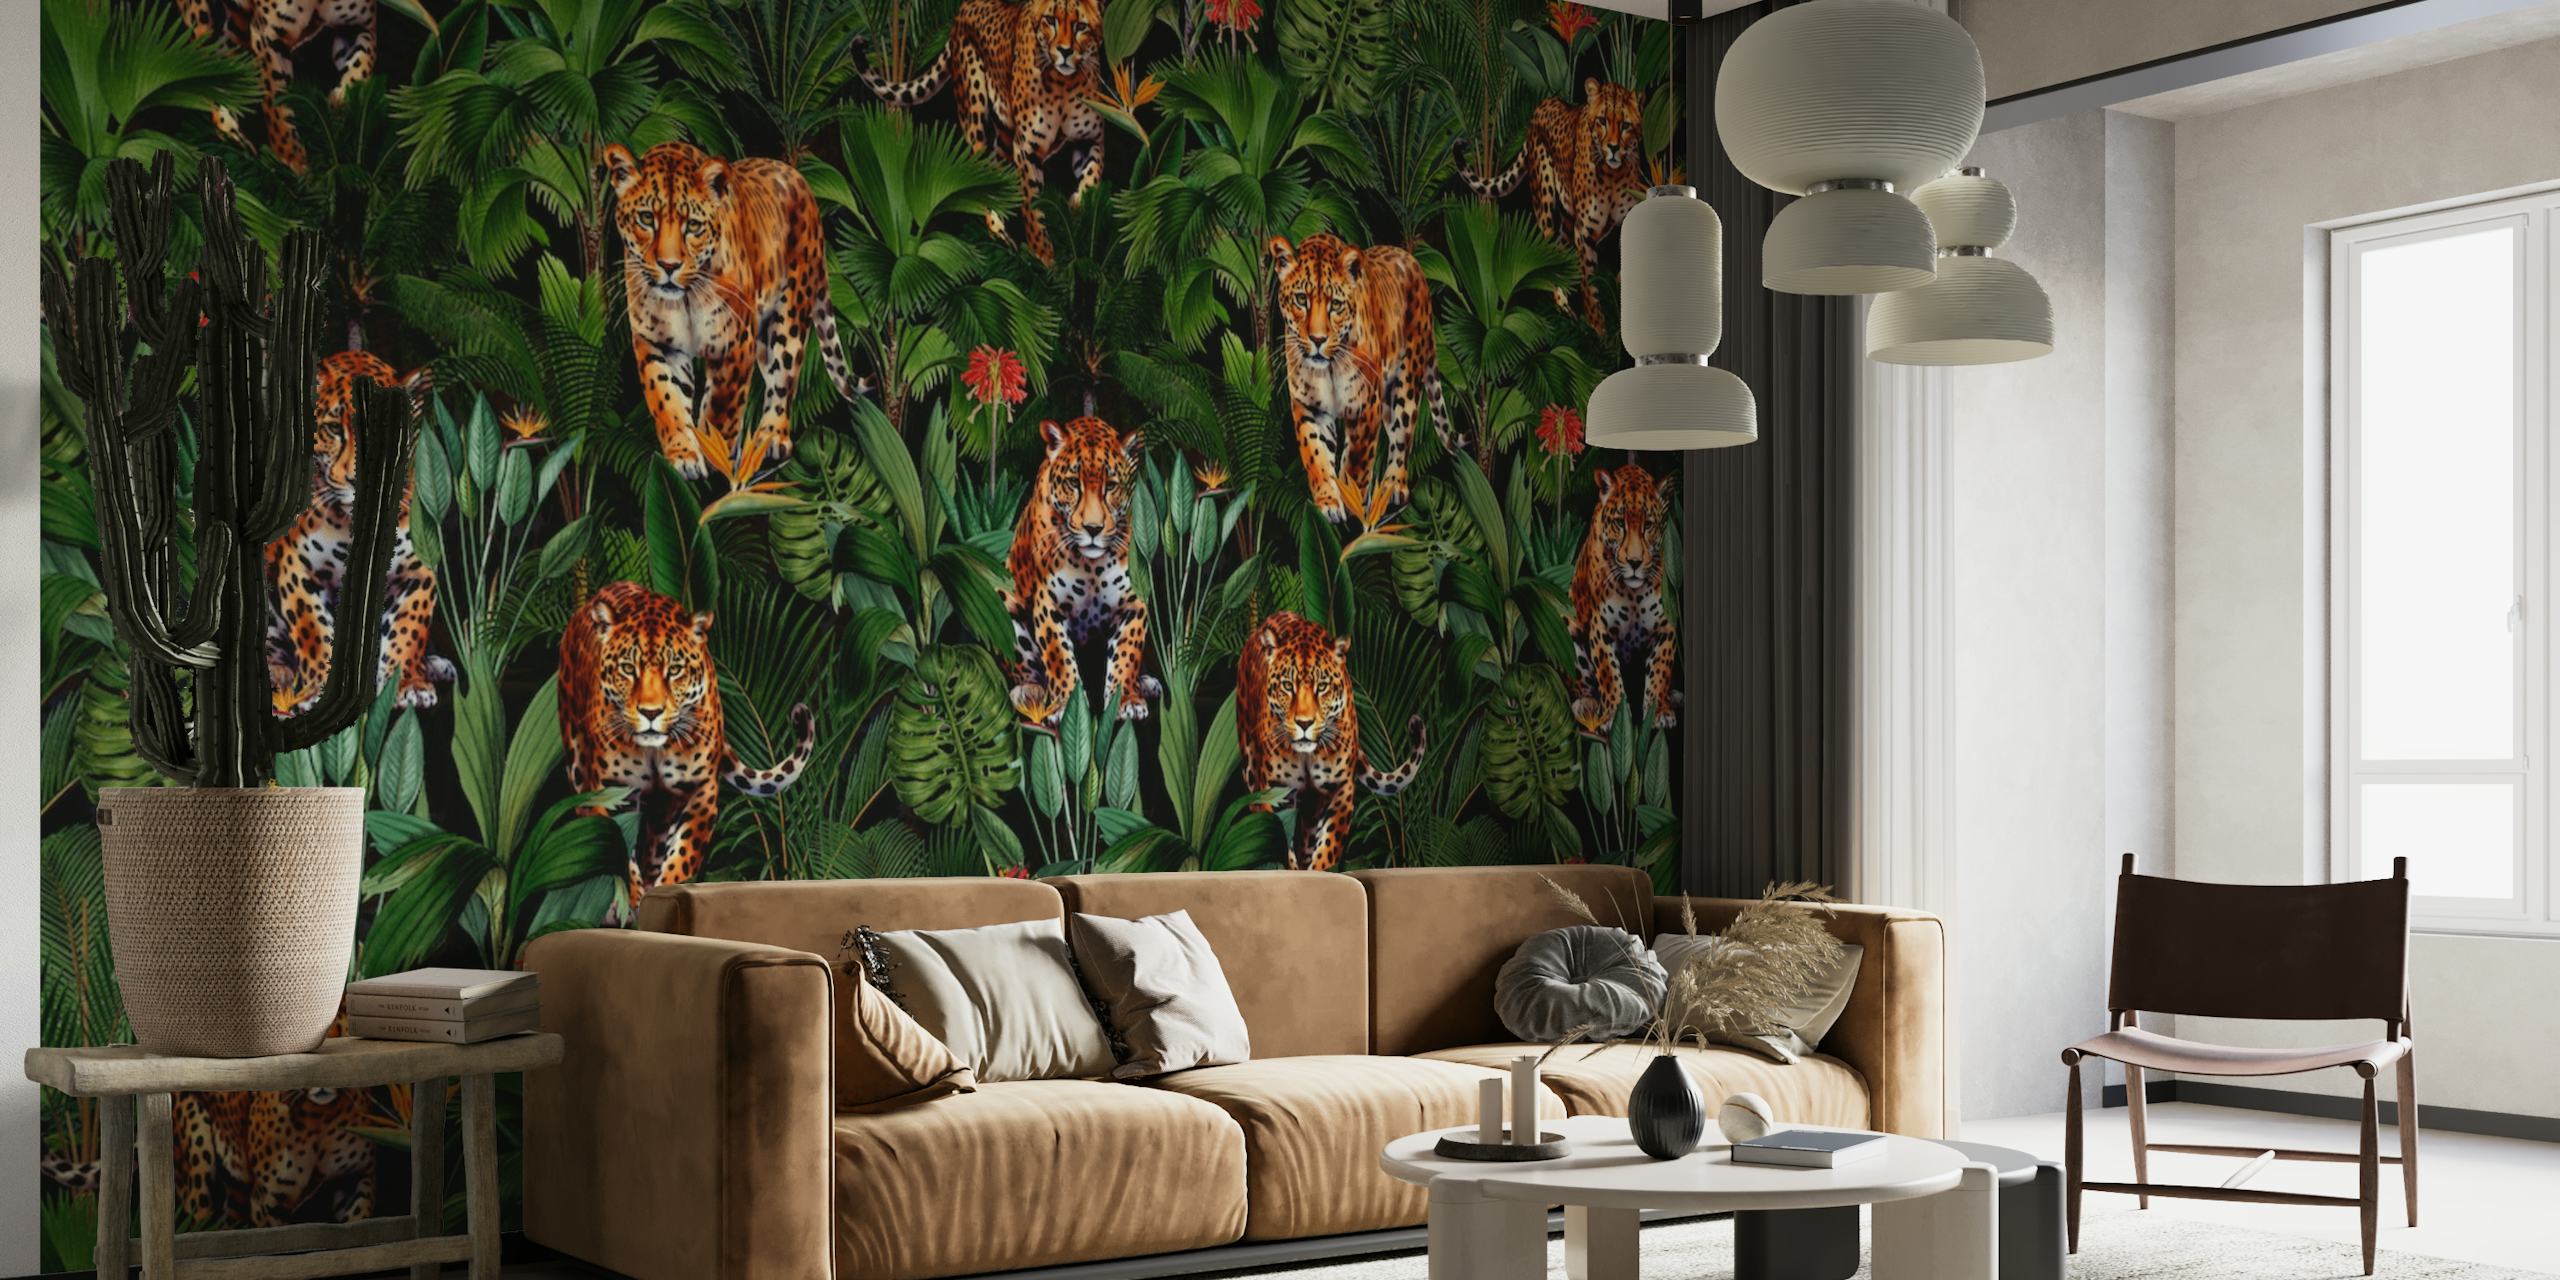 Une fresque murale dans une jungle luxuriante avec des tigres cachés parmi un feuillage vert dans un décor nocturne.